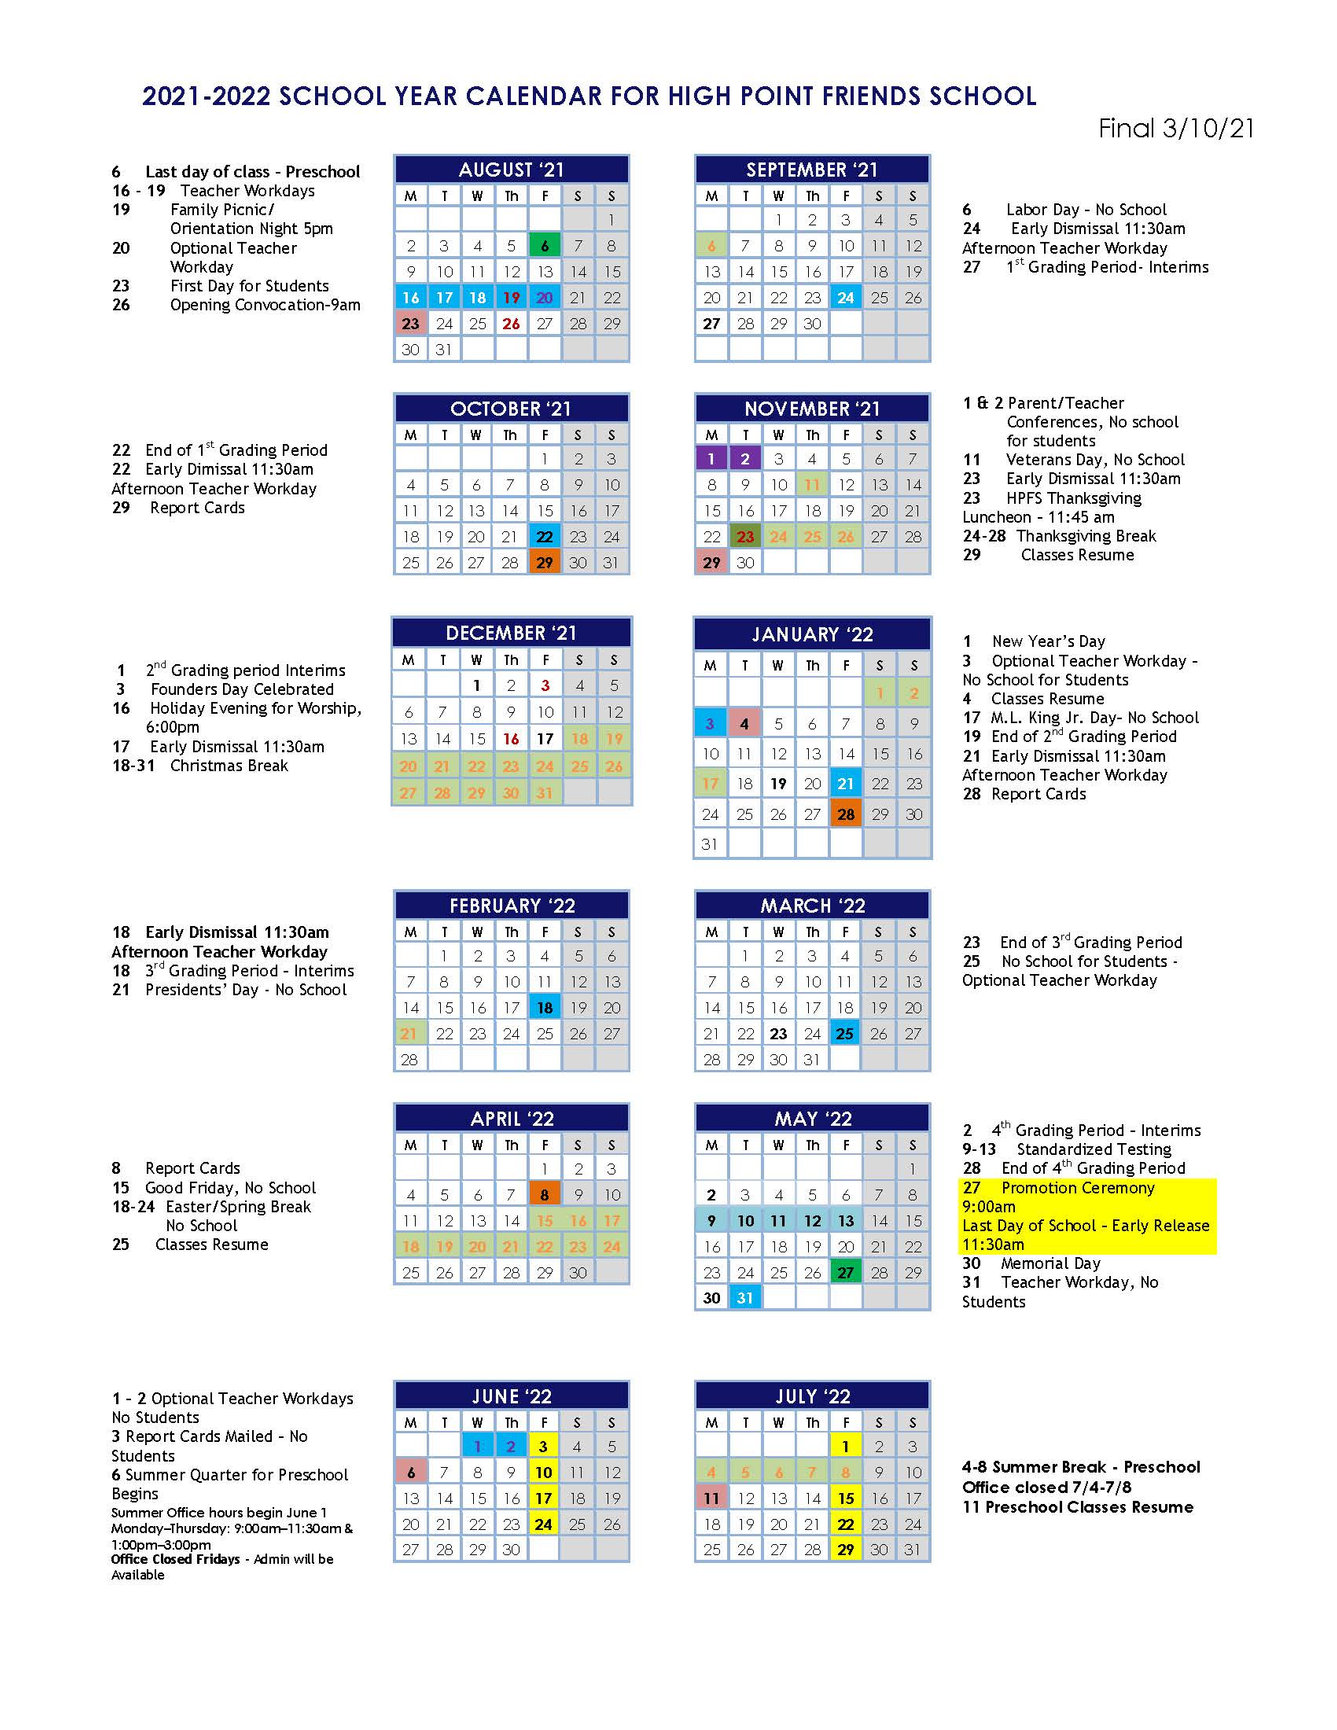 High Point University Calendar 2022 2021-2022 Calendar - High Point Friends School